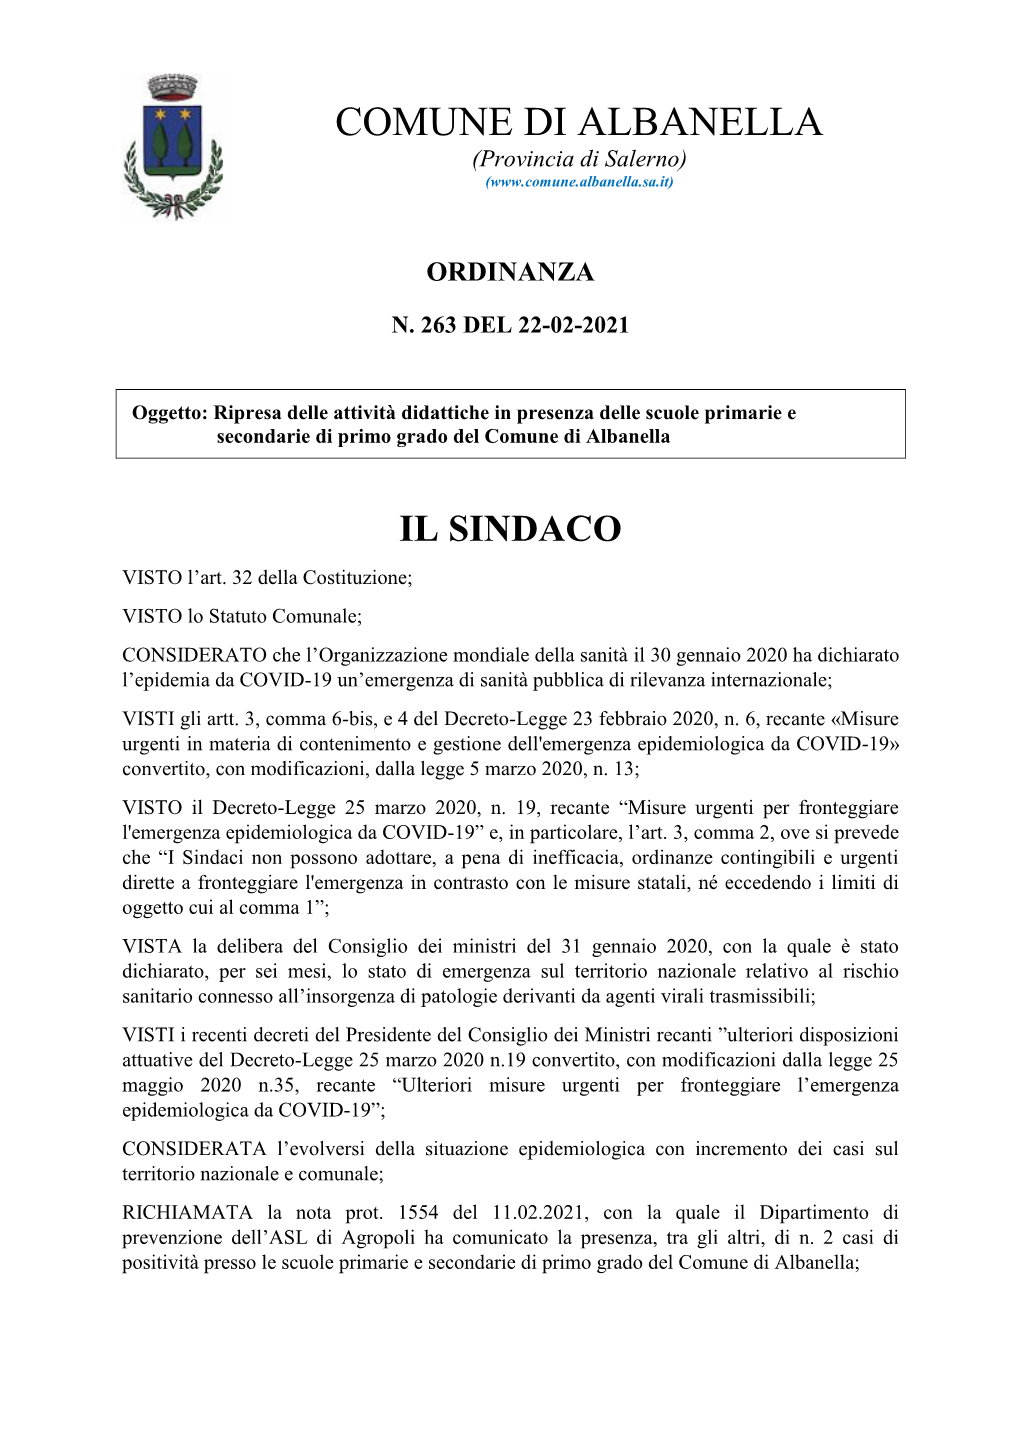 COMUNE DI ALBANELLA (Provincia Di Salerno) (